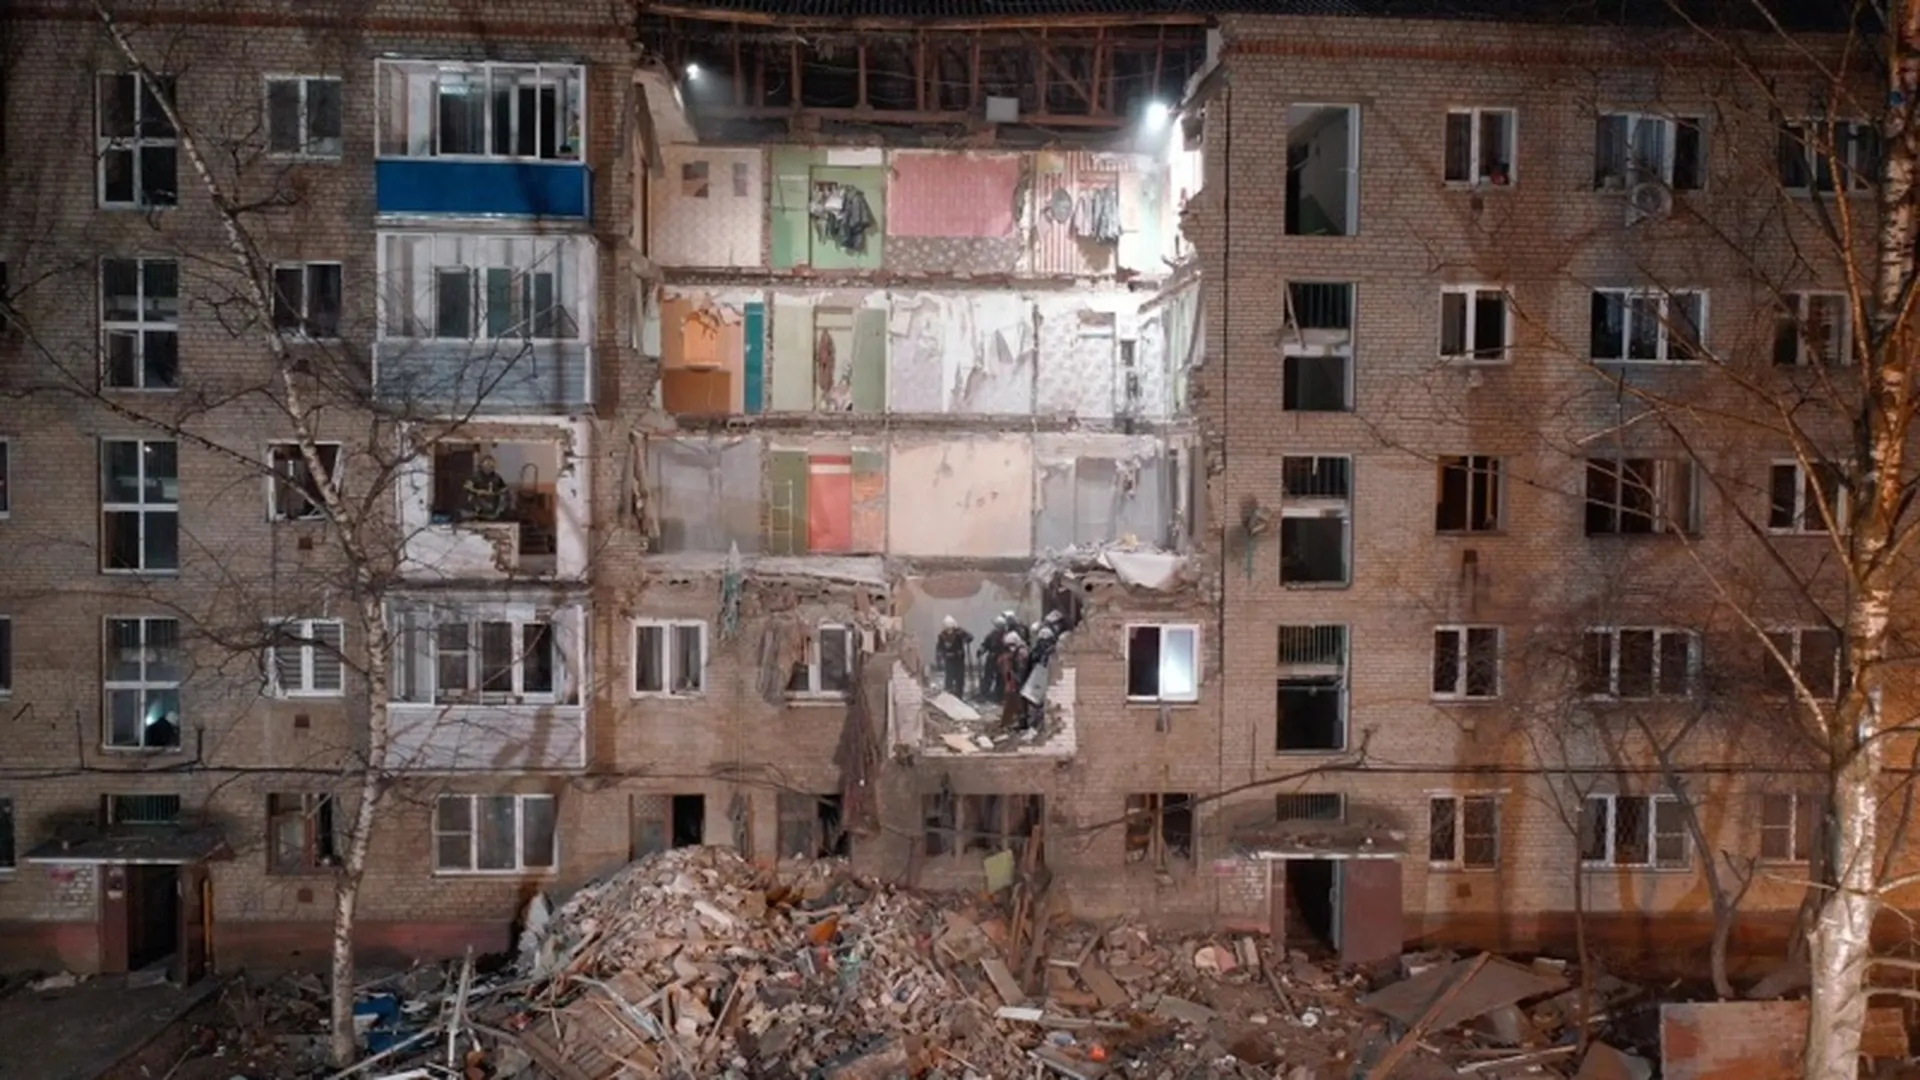 Спасательные работы на месте обрушения дома в Орехово-Зуево завершены